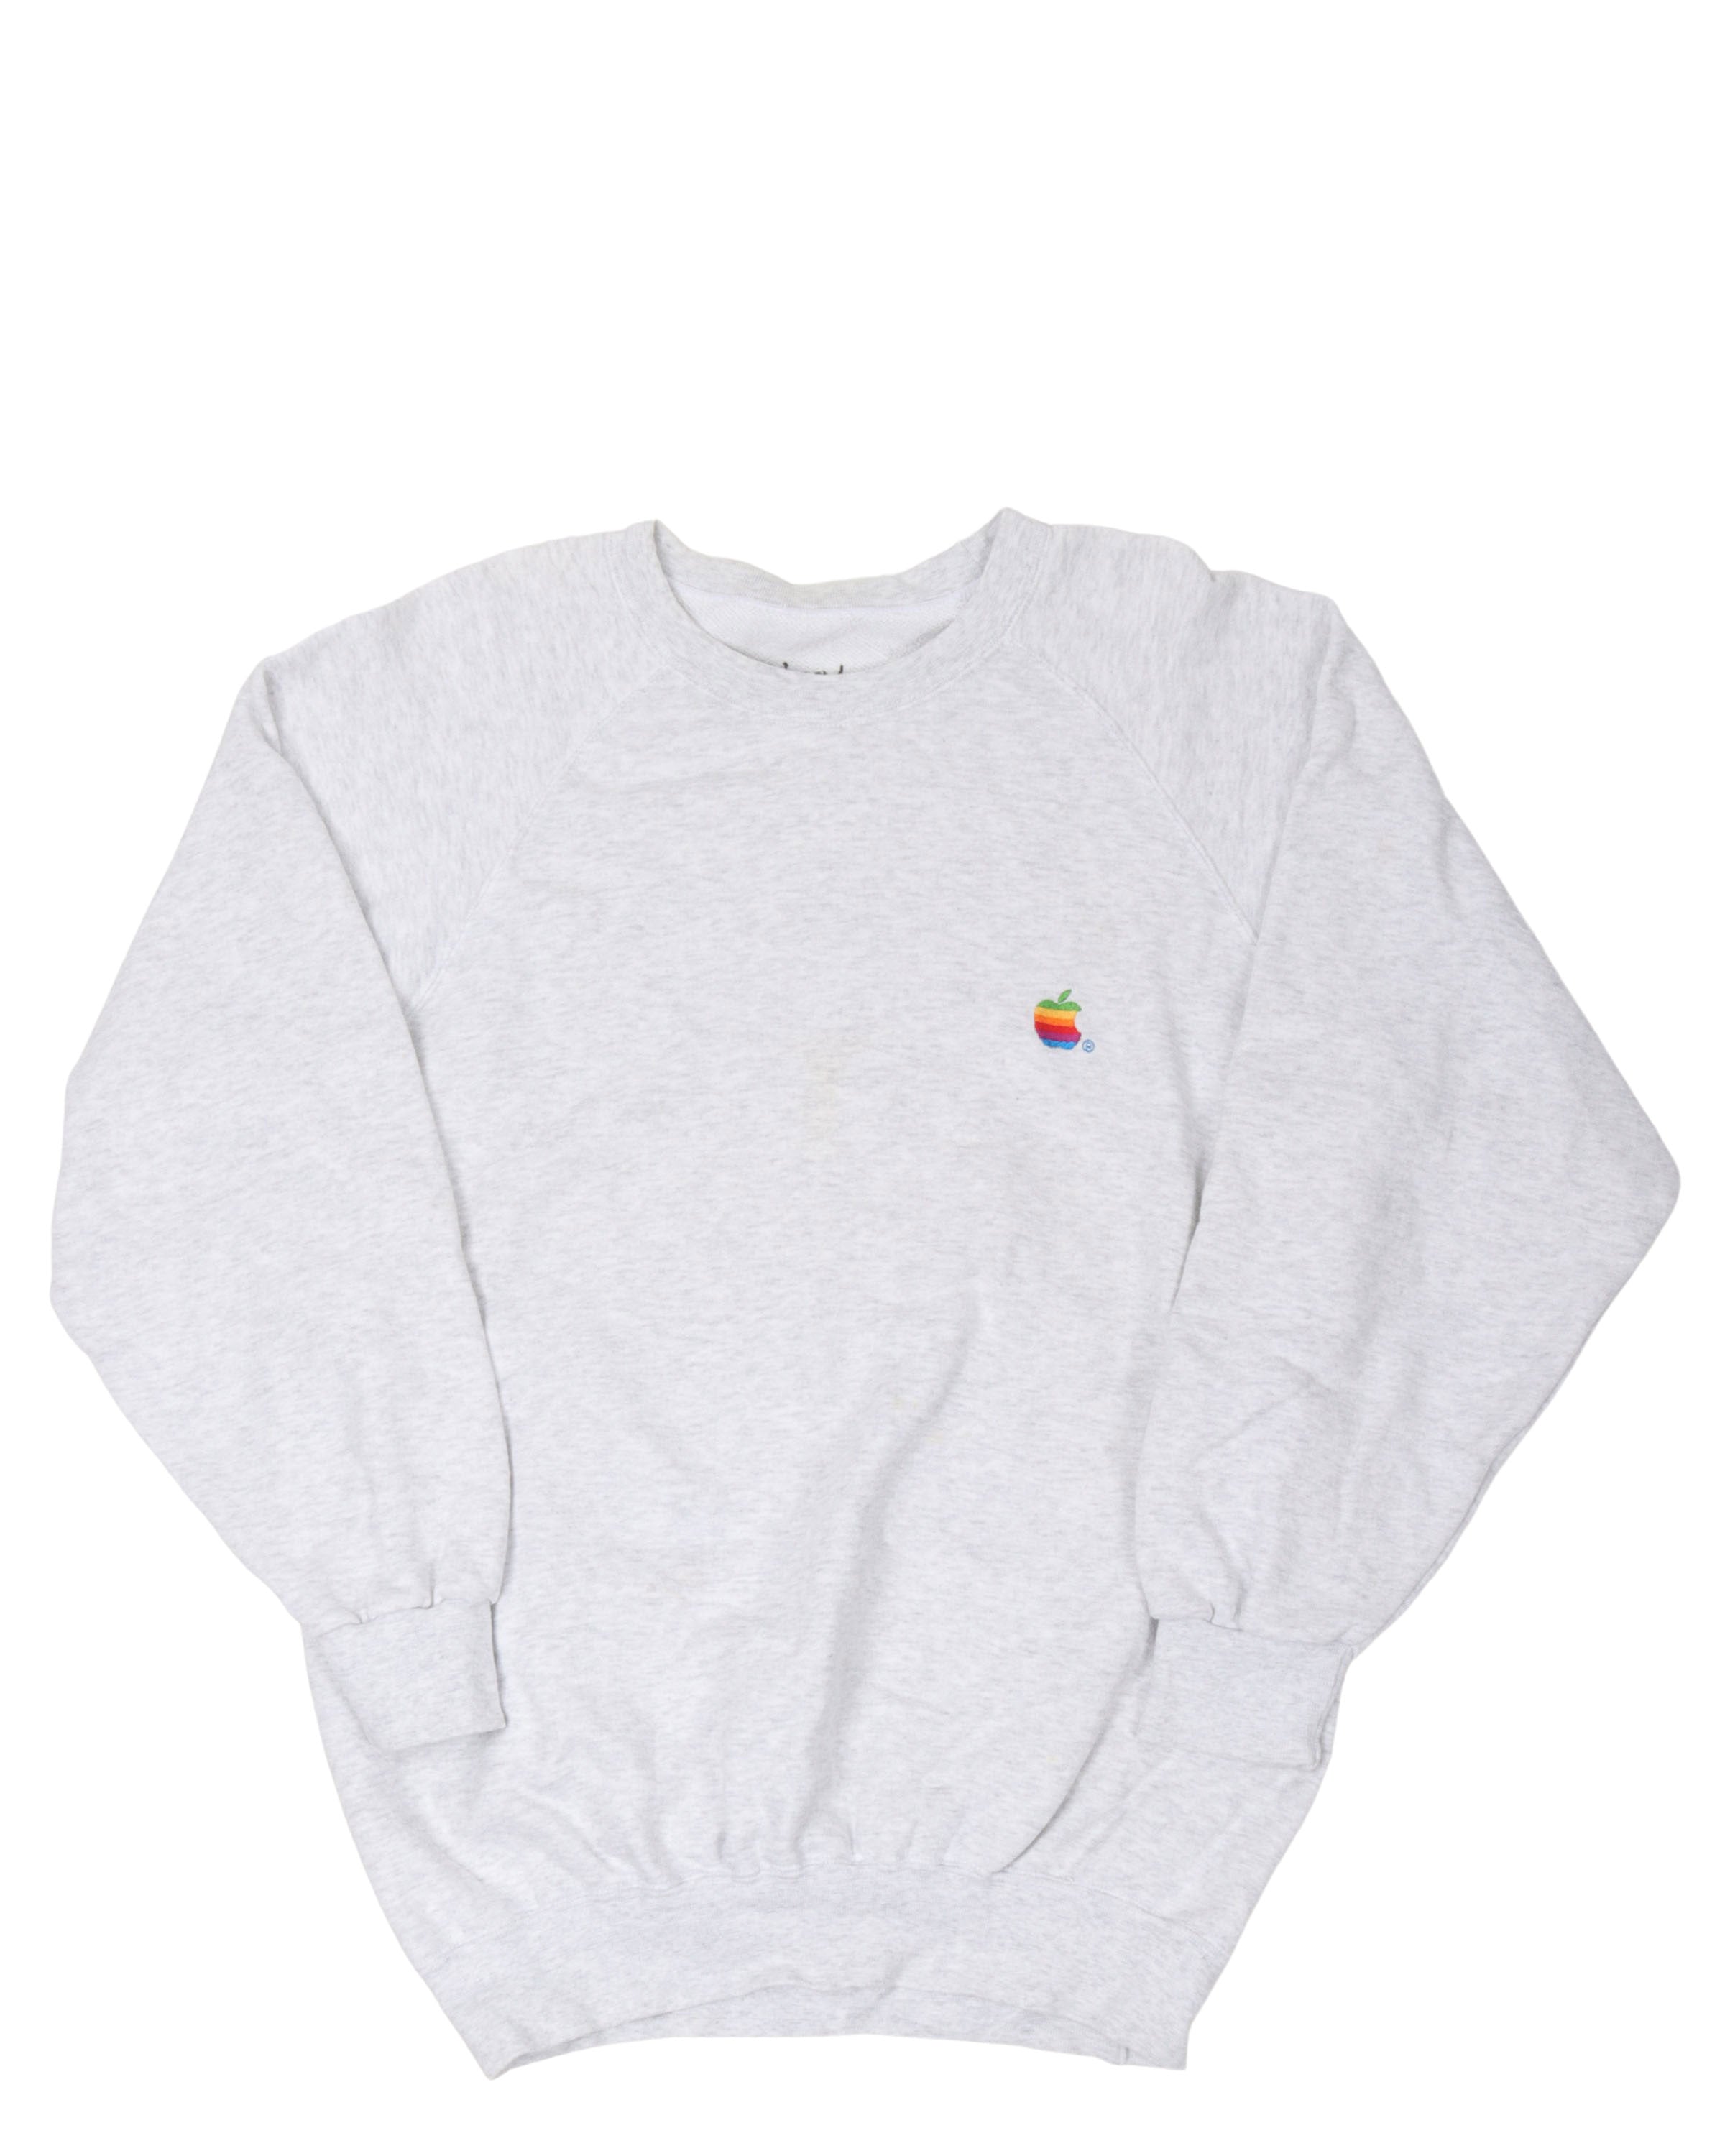 Vintage Apple Sweatshirt